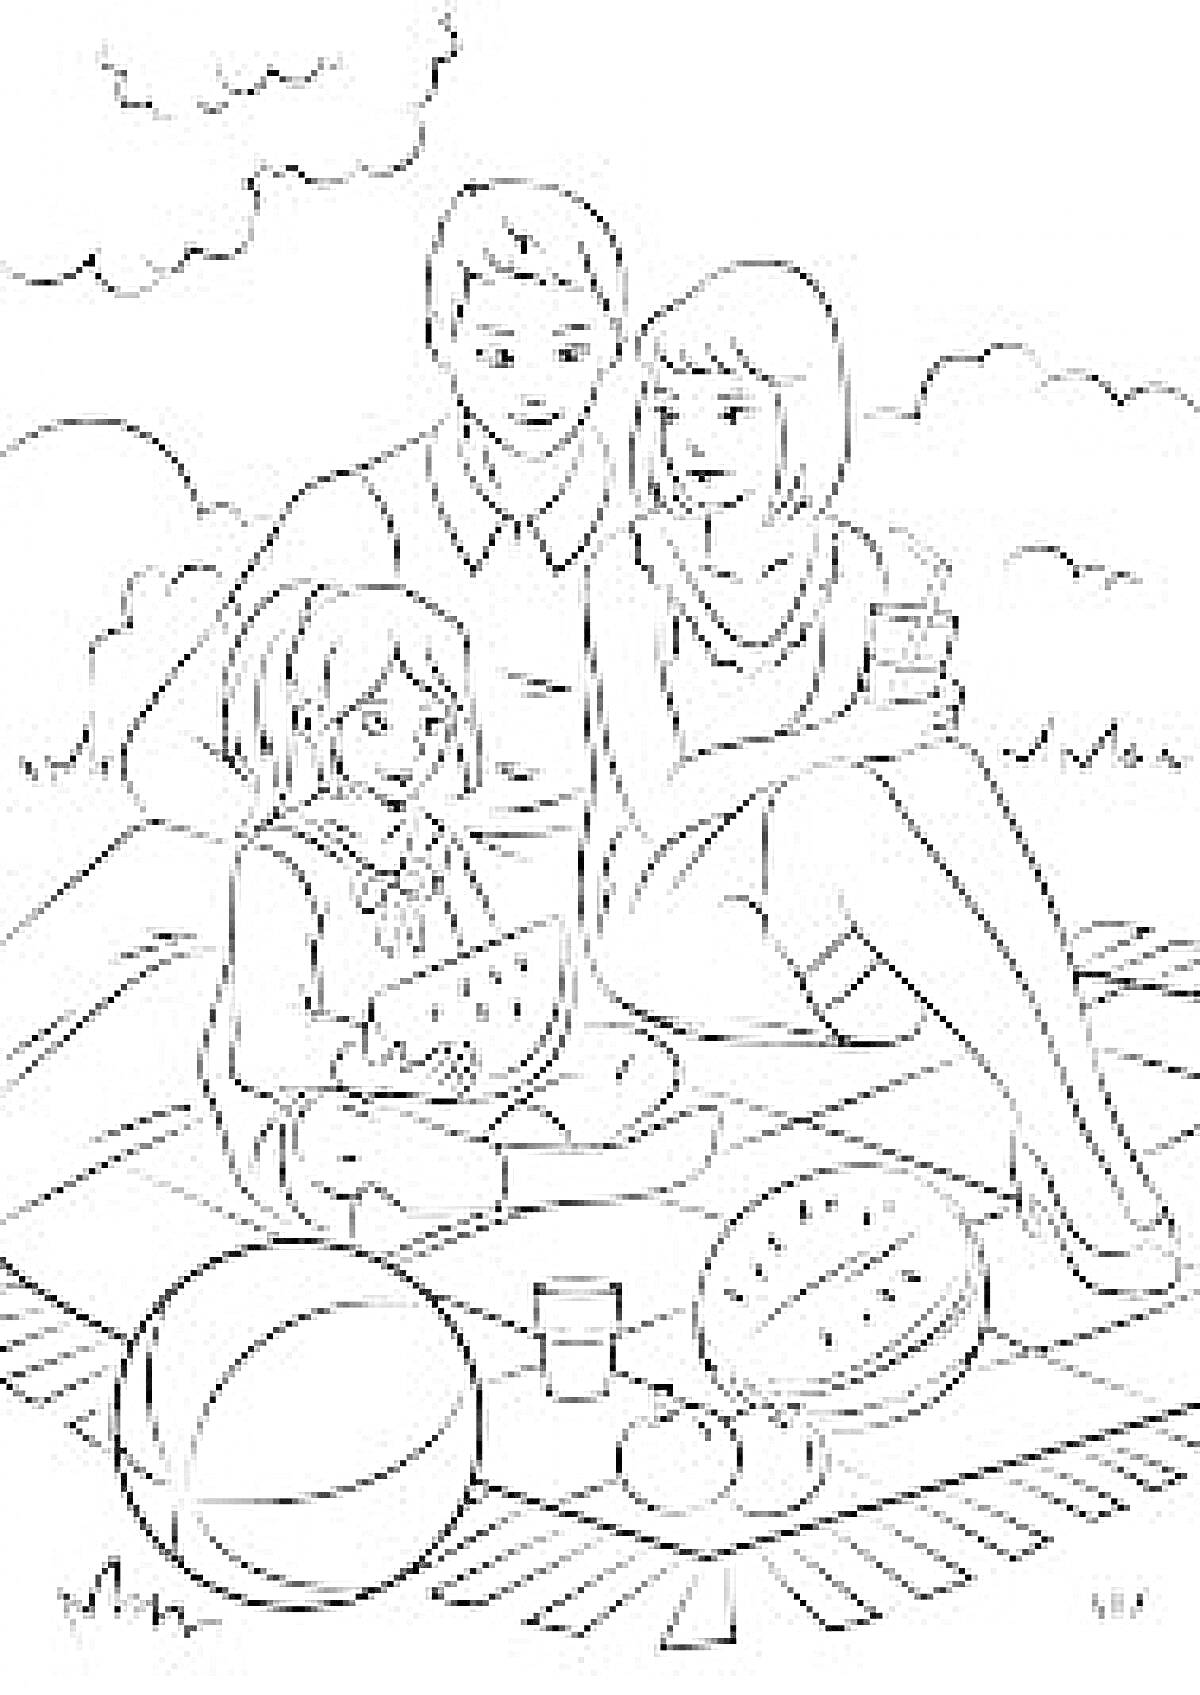 Семья на пикнике, девочка ест арбуз, родители рядом, на покрывале фрукты, стакан, мяч